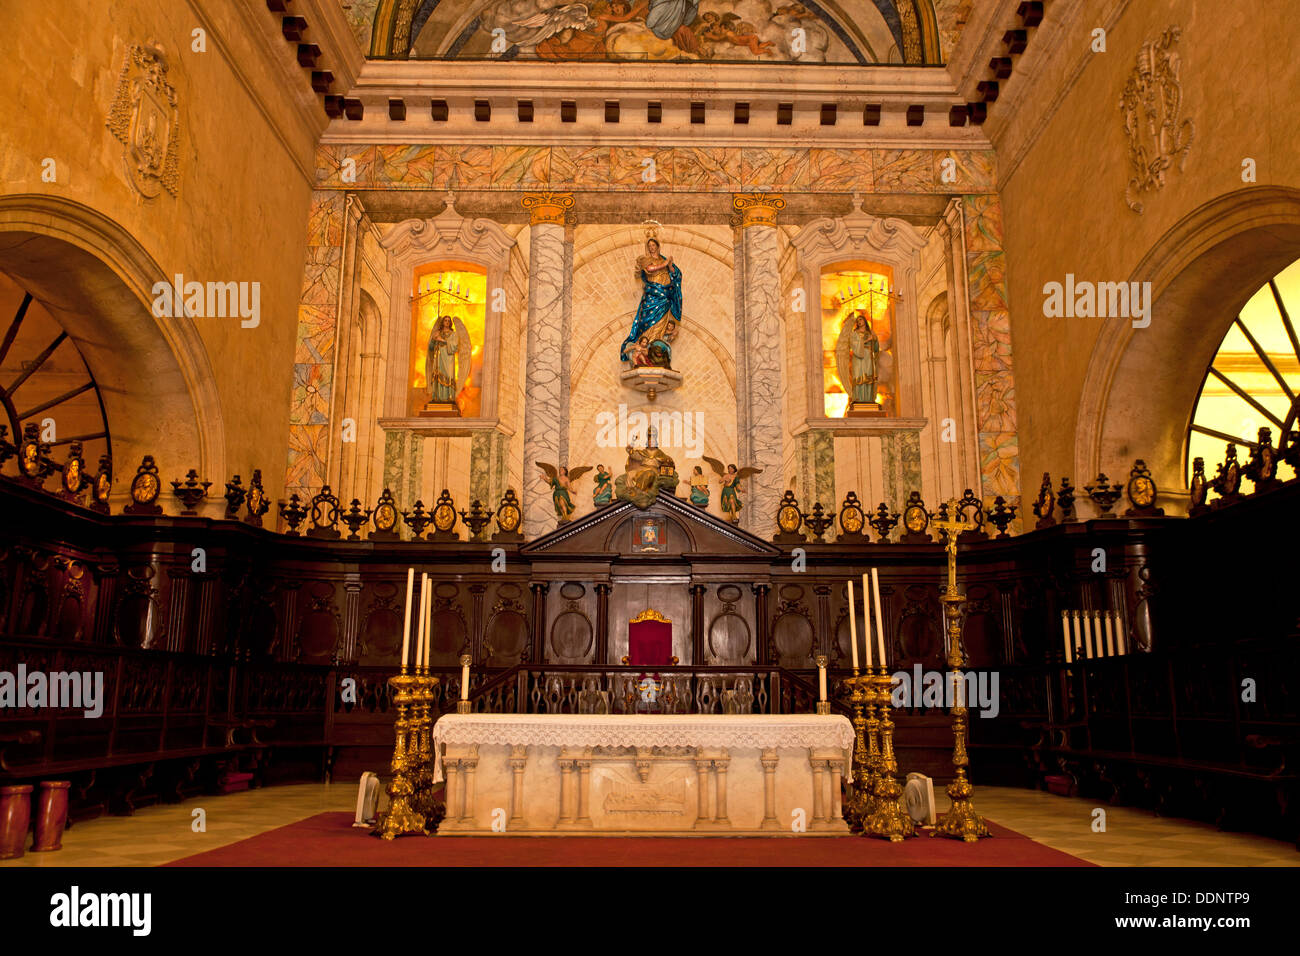 Intérieur de la cathédrale Catedral de San Cristobal dans la vieille ville de La Havane La Habana Vieja, La Havane, Cuba, Caraïbes Banque D'Images